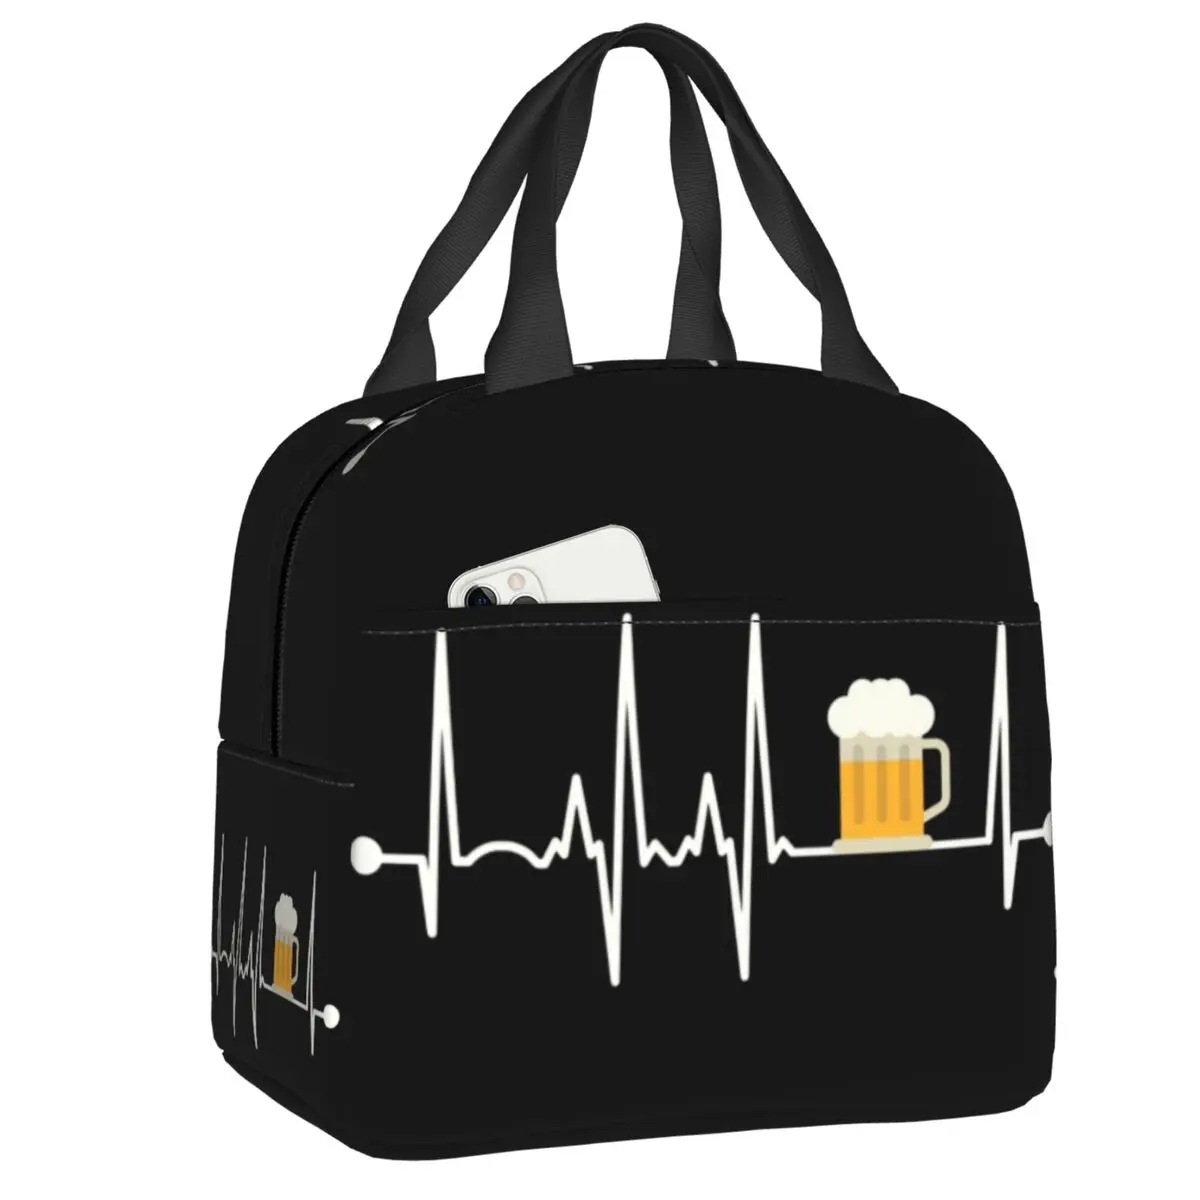 

Изолированная сумка для ланча с изображением пульса и пива для женщин, многоразовый термоохладитель, Ланч-бокс для еды, сумка-тоут для работы, школы, путешествий, пикника